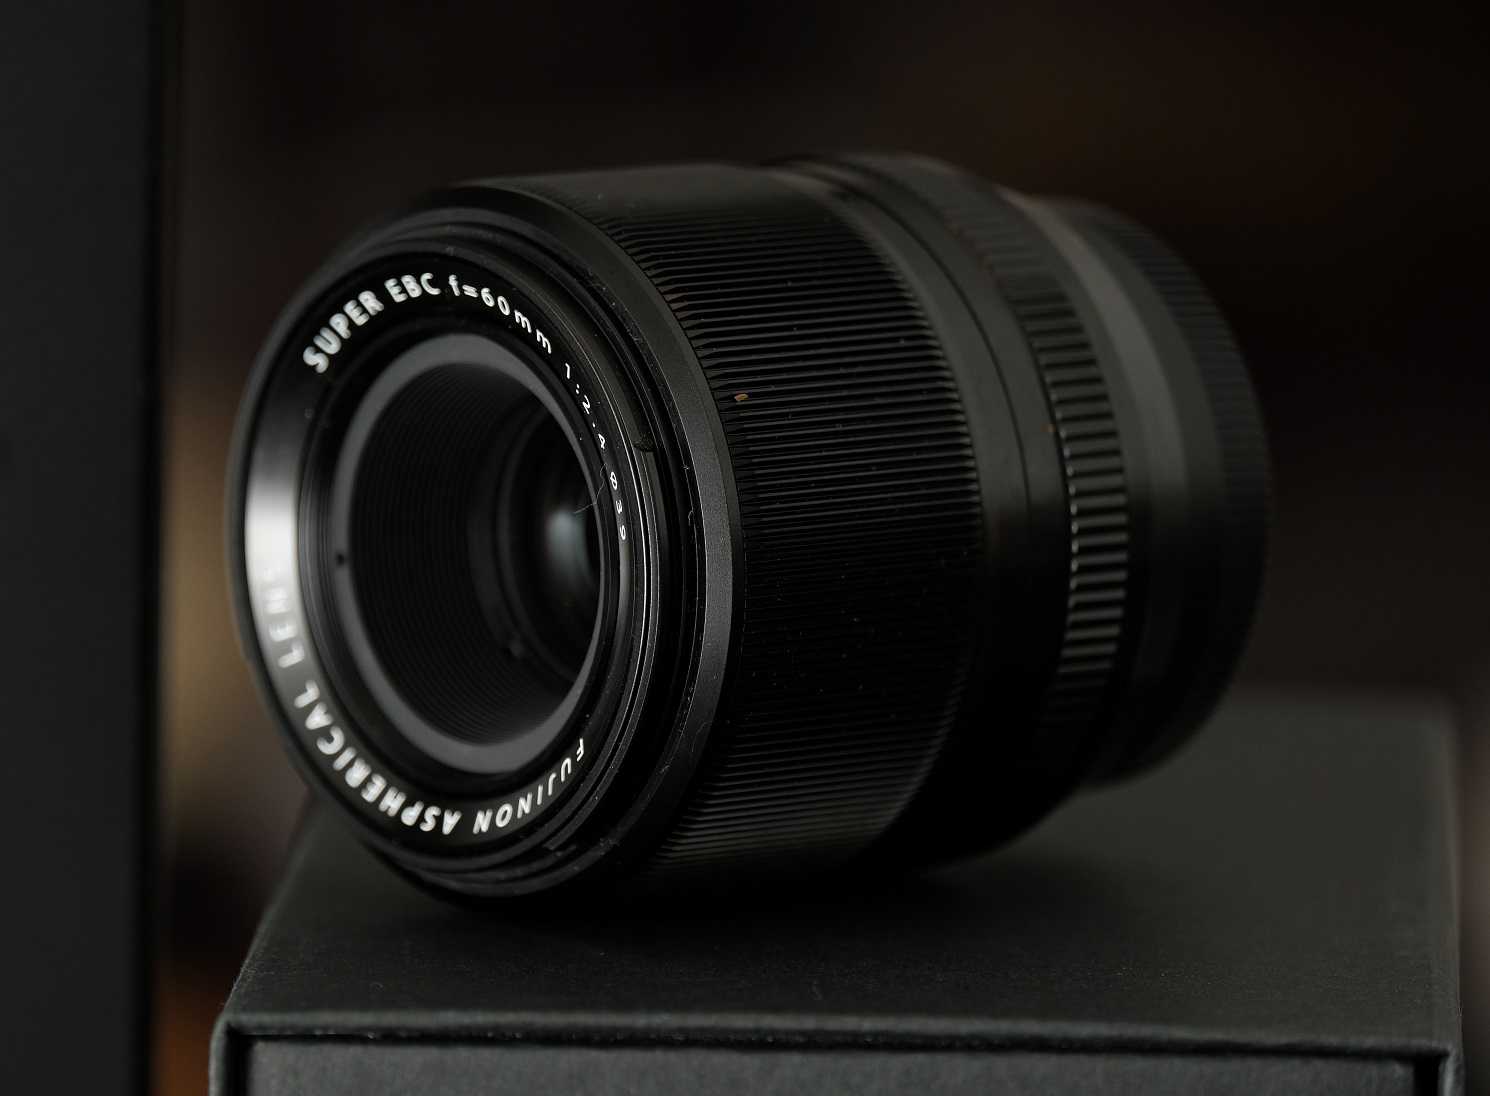 Объективы для фото и видеокамер fujifilm xf 60mm f/2.4 r macro купить за 39999 руб в краснодаре, отзывы, видео обзоры и характеристики